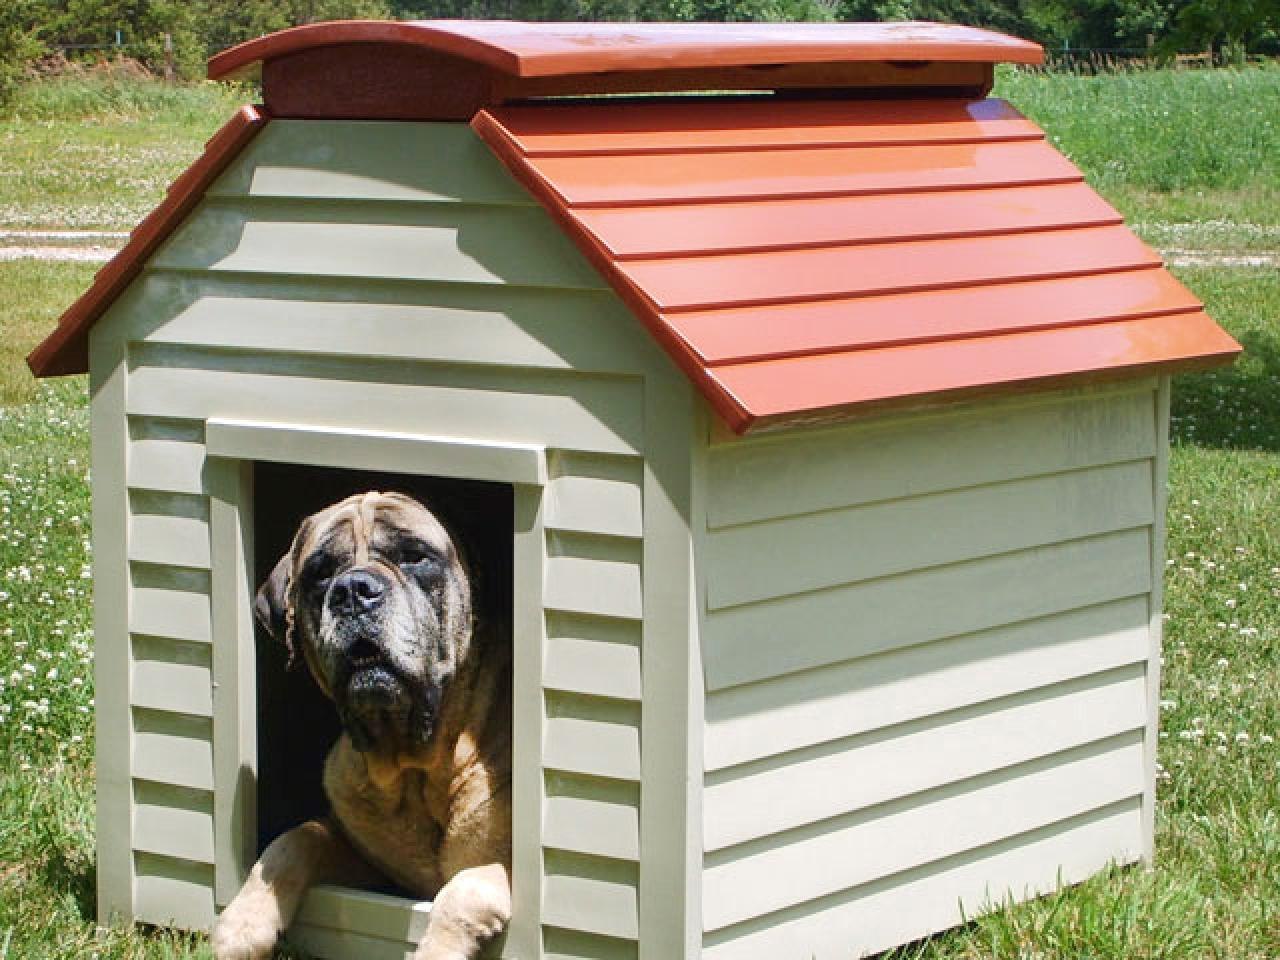 New dog house. . Будка Терри 1700. Собачья будка. Собака с конурой. Красивые будки для собак.